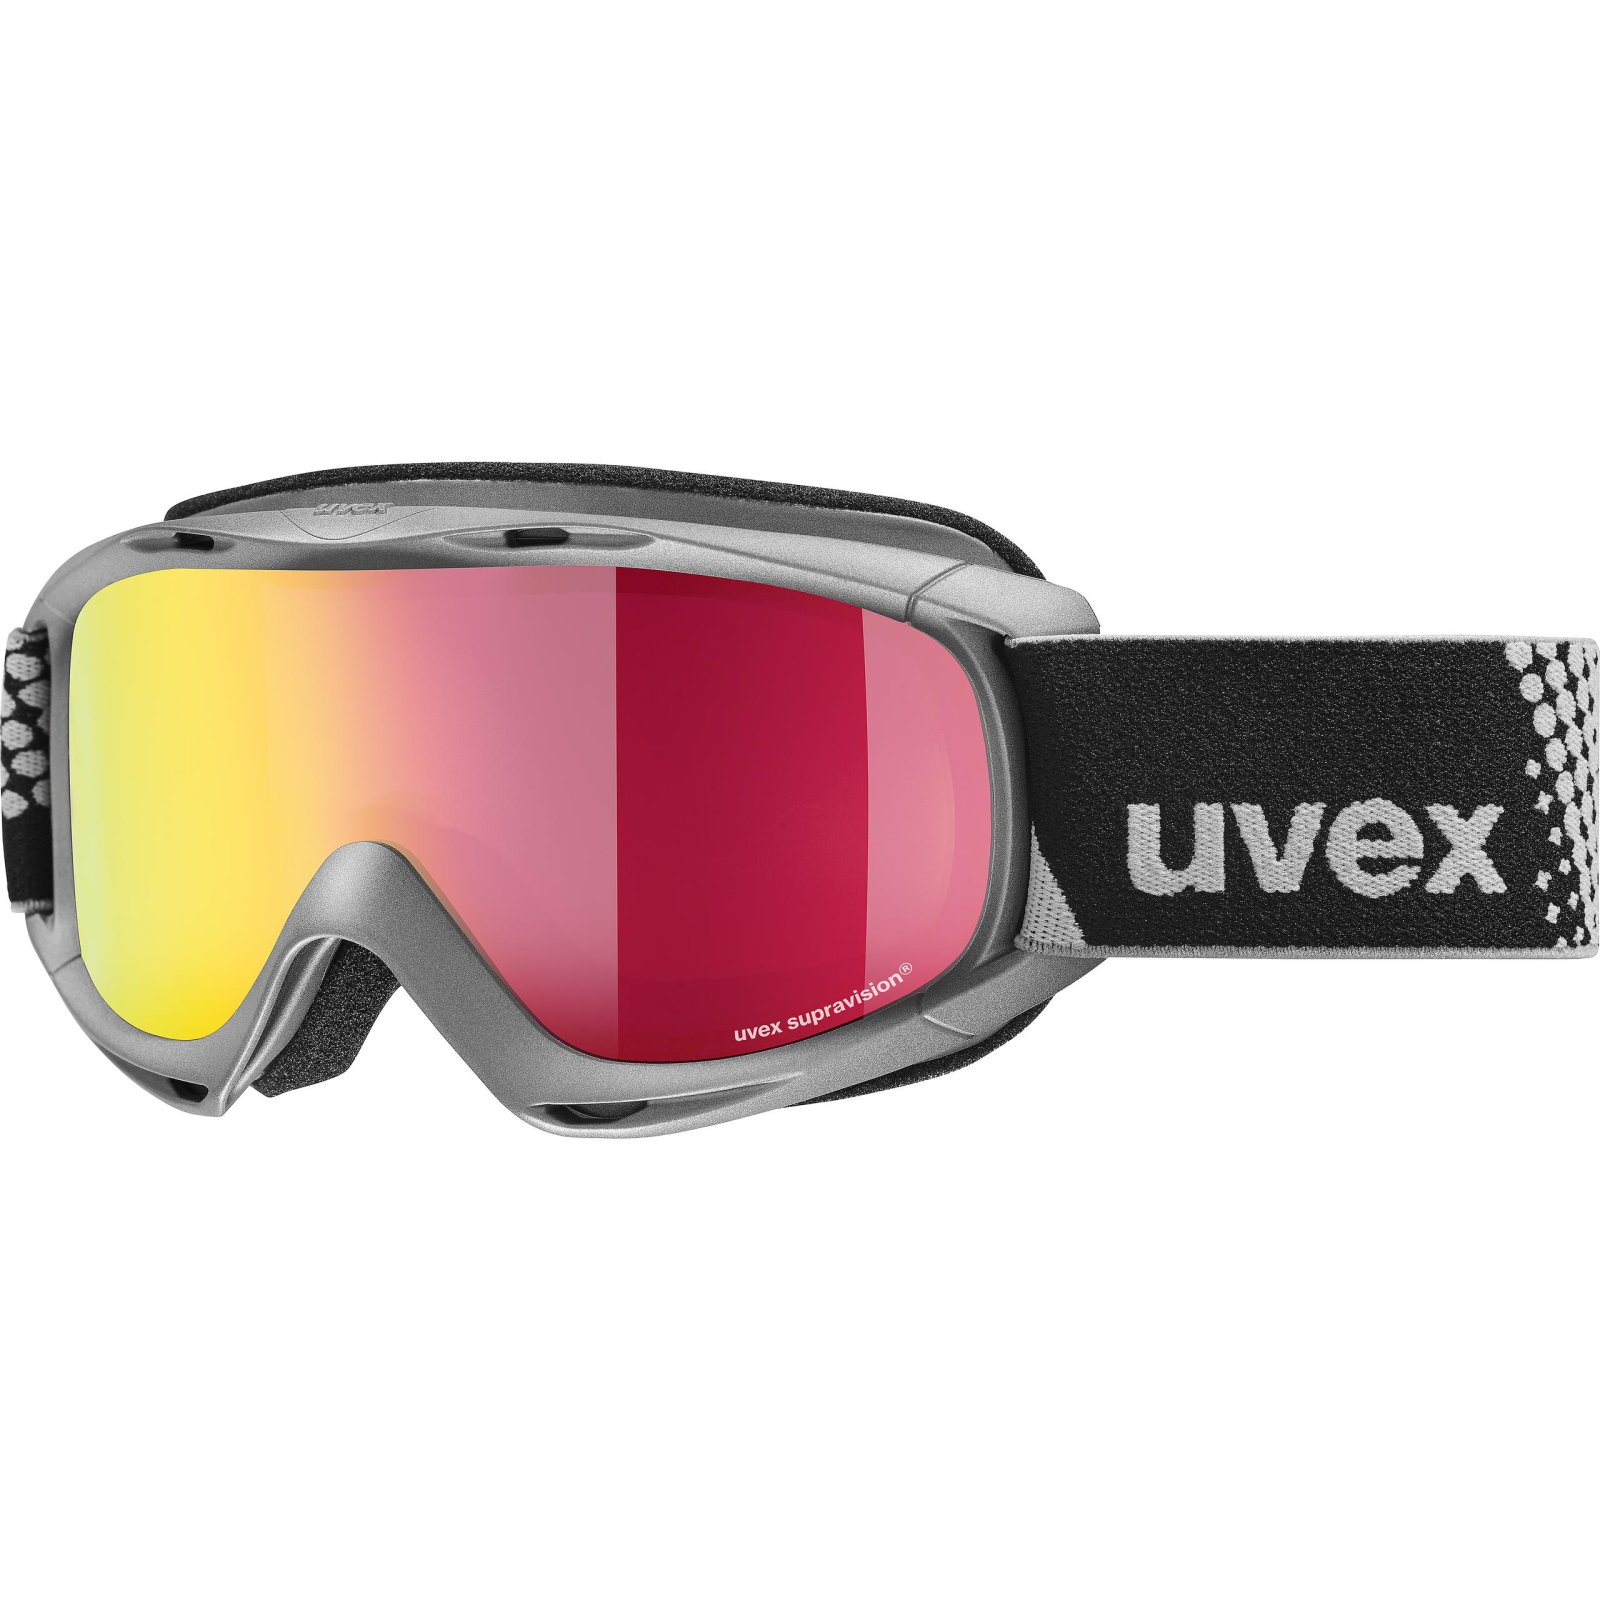 Kids ski goggles UVEX slider FM 19/20